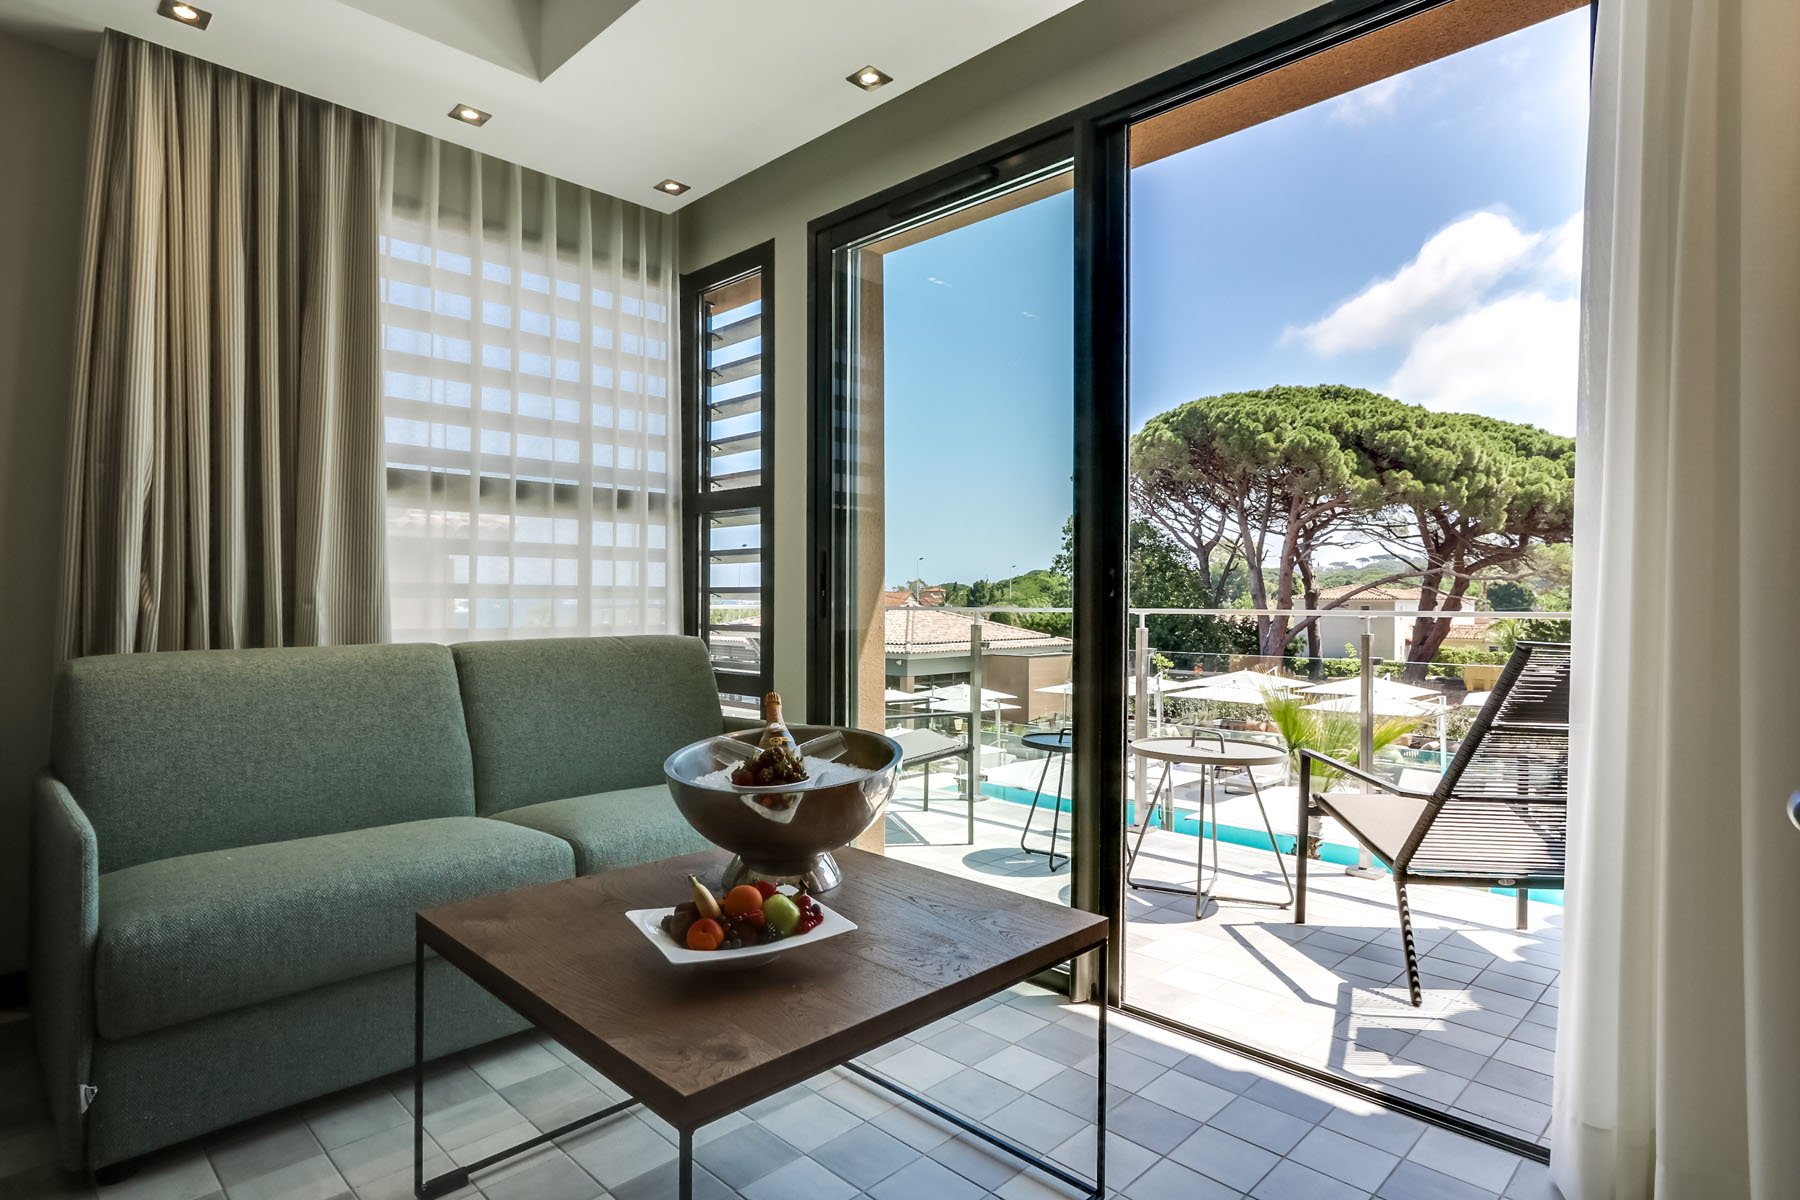 Chambres, Suites et Villa WOOD - Kube Hotel Saint-Tropez - Côte d'Azur